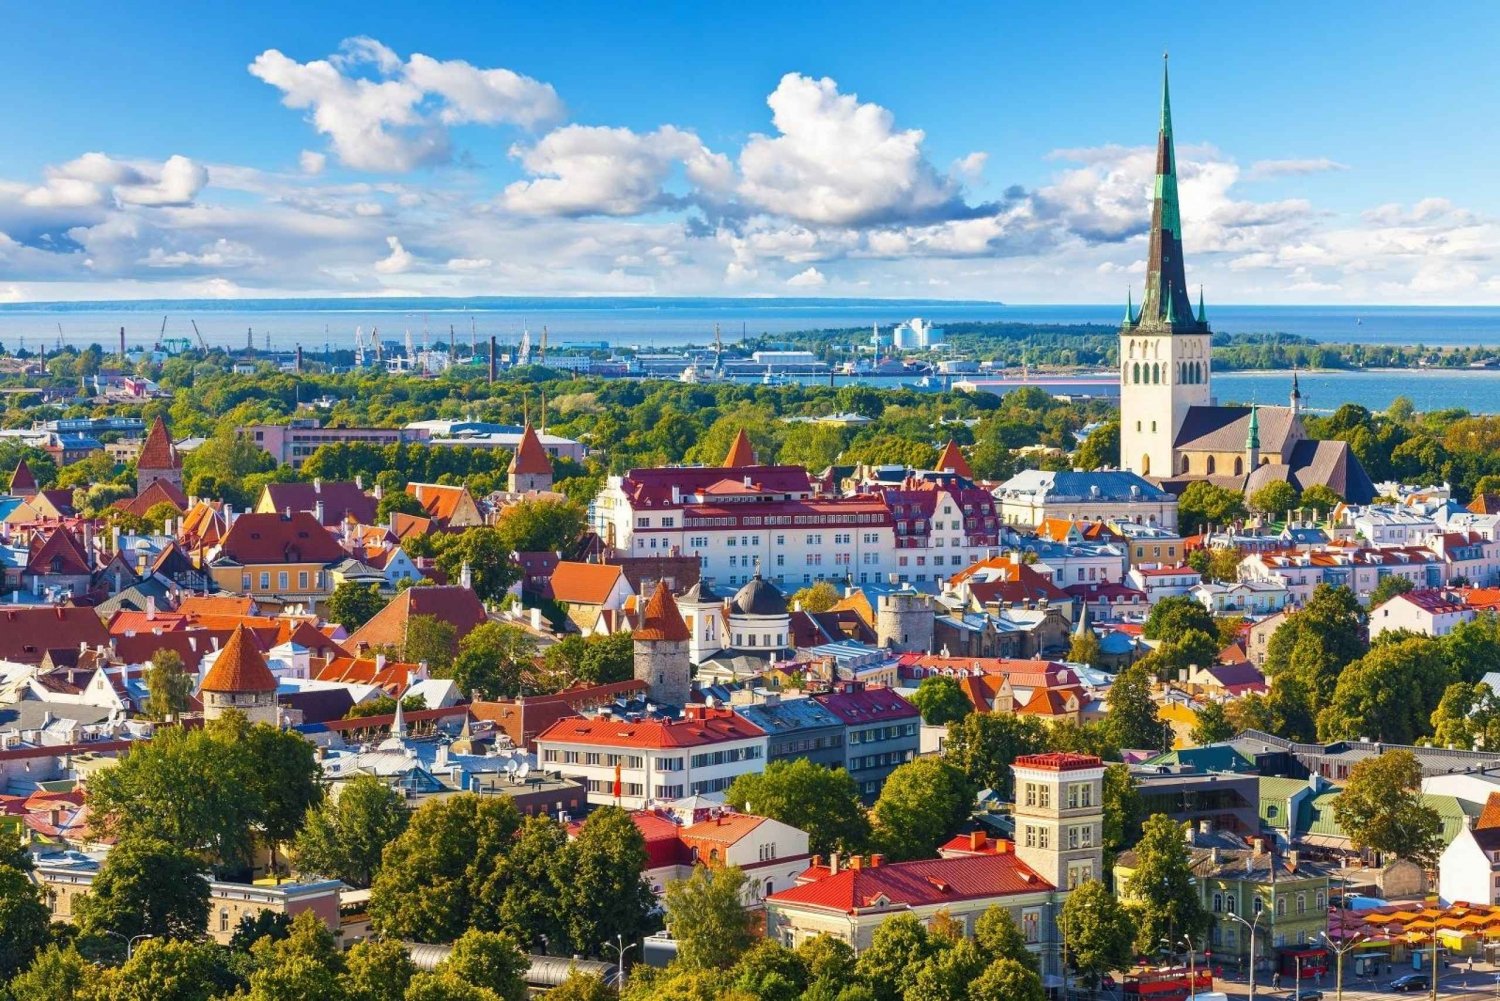 Vanuit Helsinki: begeleide dagtour door Tallinn per veerboot